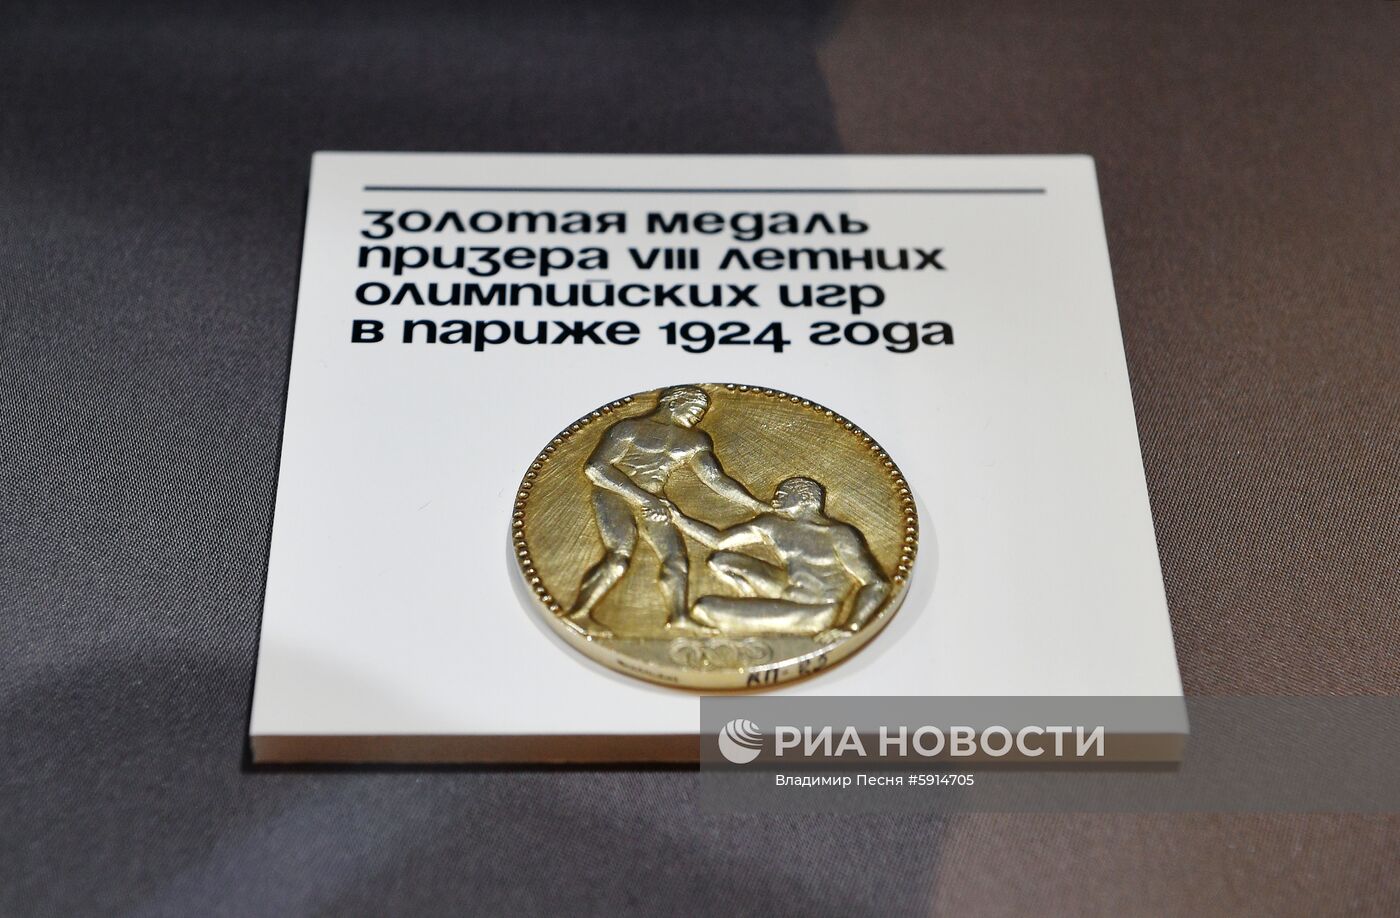 Презентация коллекции олимпийских артефактов В. Потанина